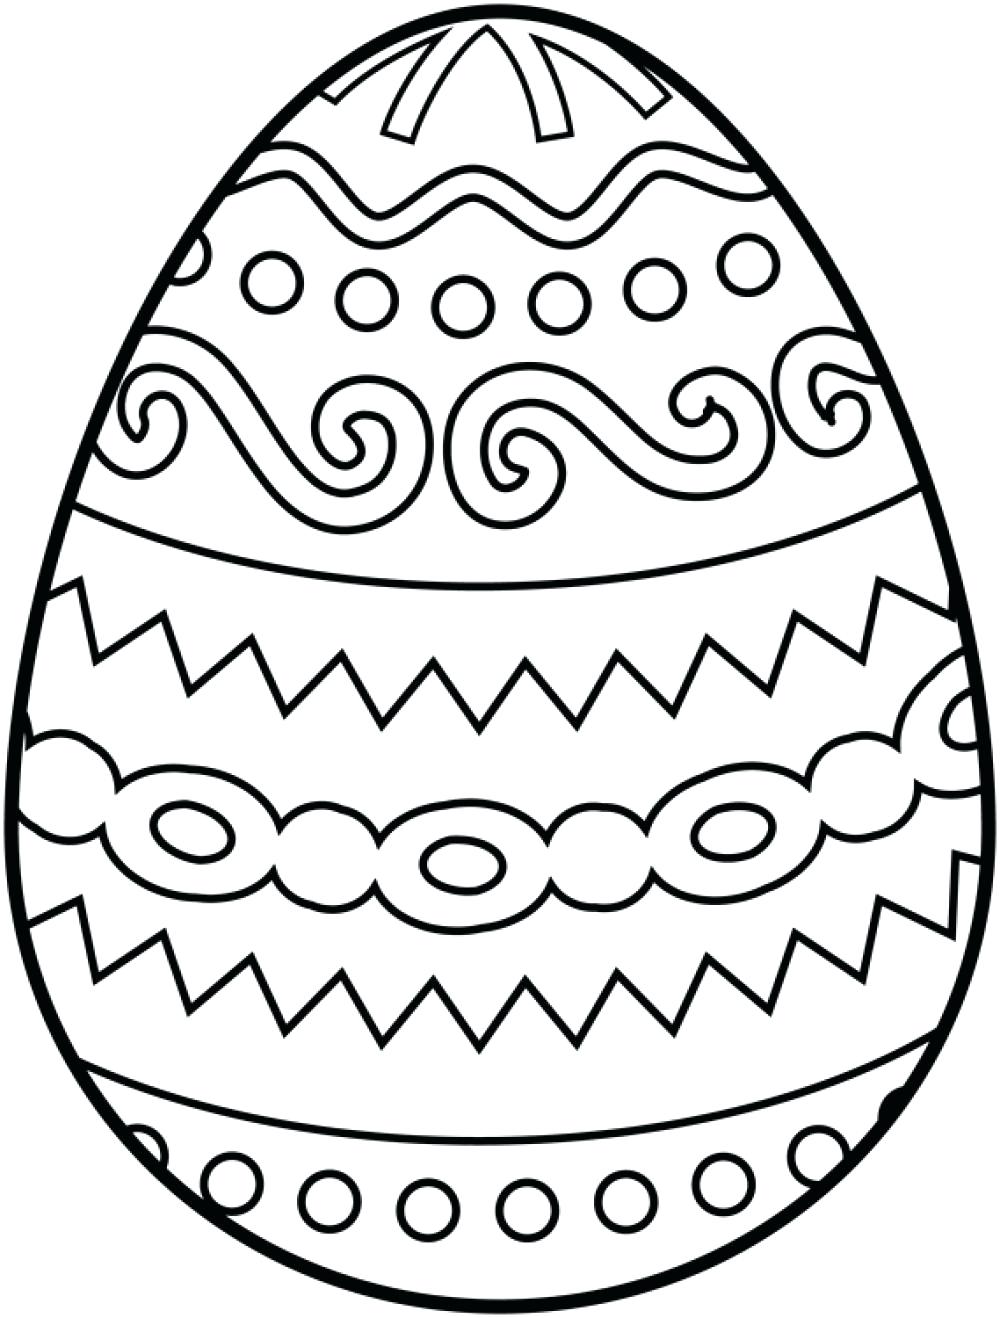 Mẫu tranh tô màu quả trứng với họa tiết đẹp